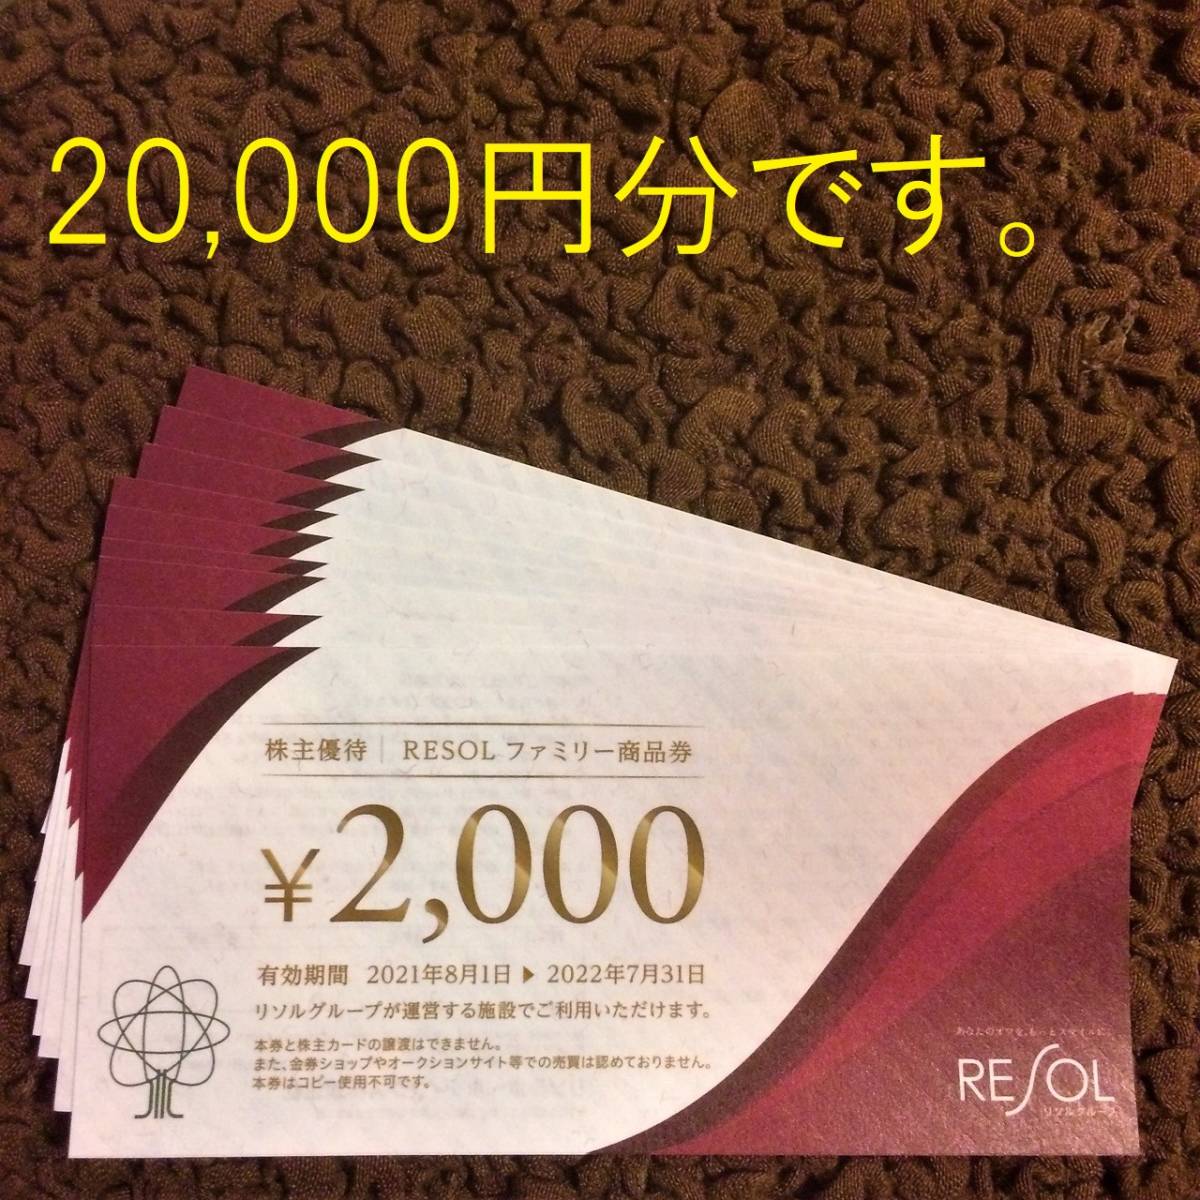 リソル 株主優待券 2万円分 - tempguard.io